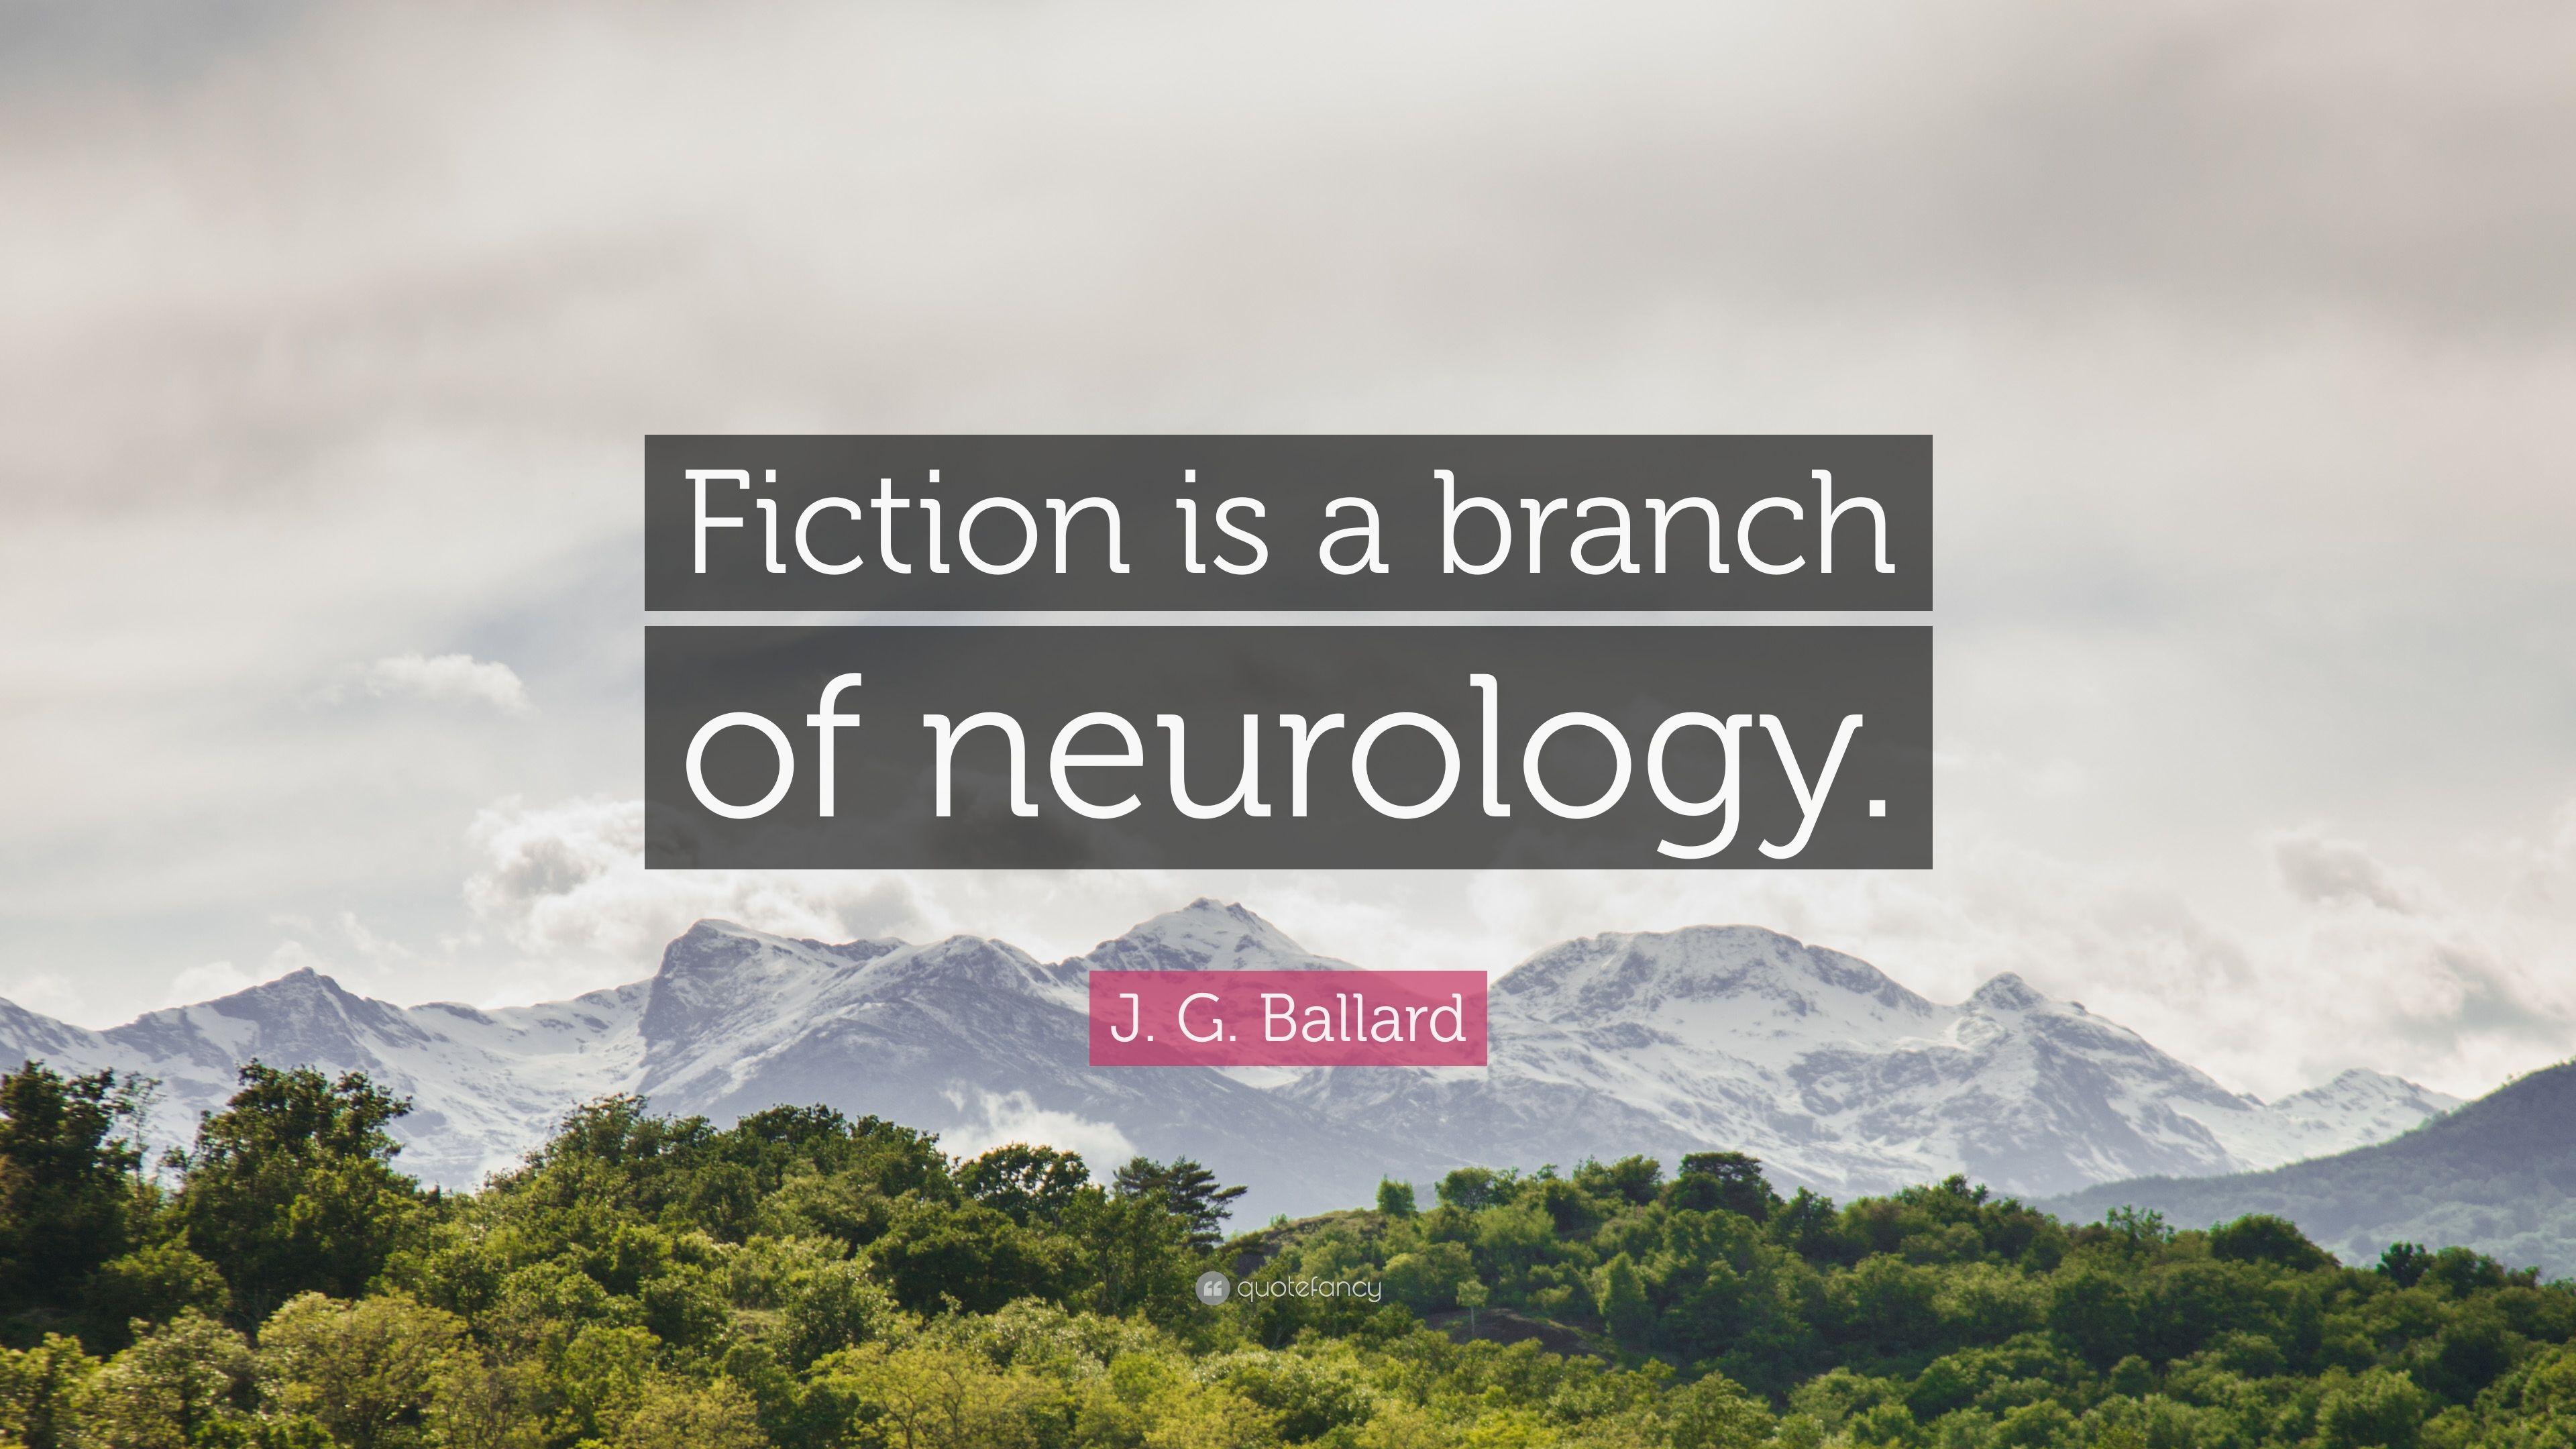 J. G. Ballard Quote: “Fiction is a branch of neurology.” 9